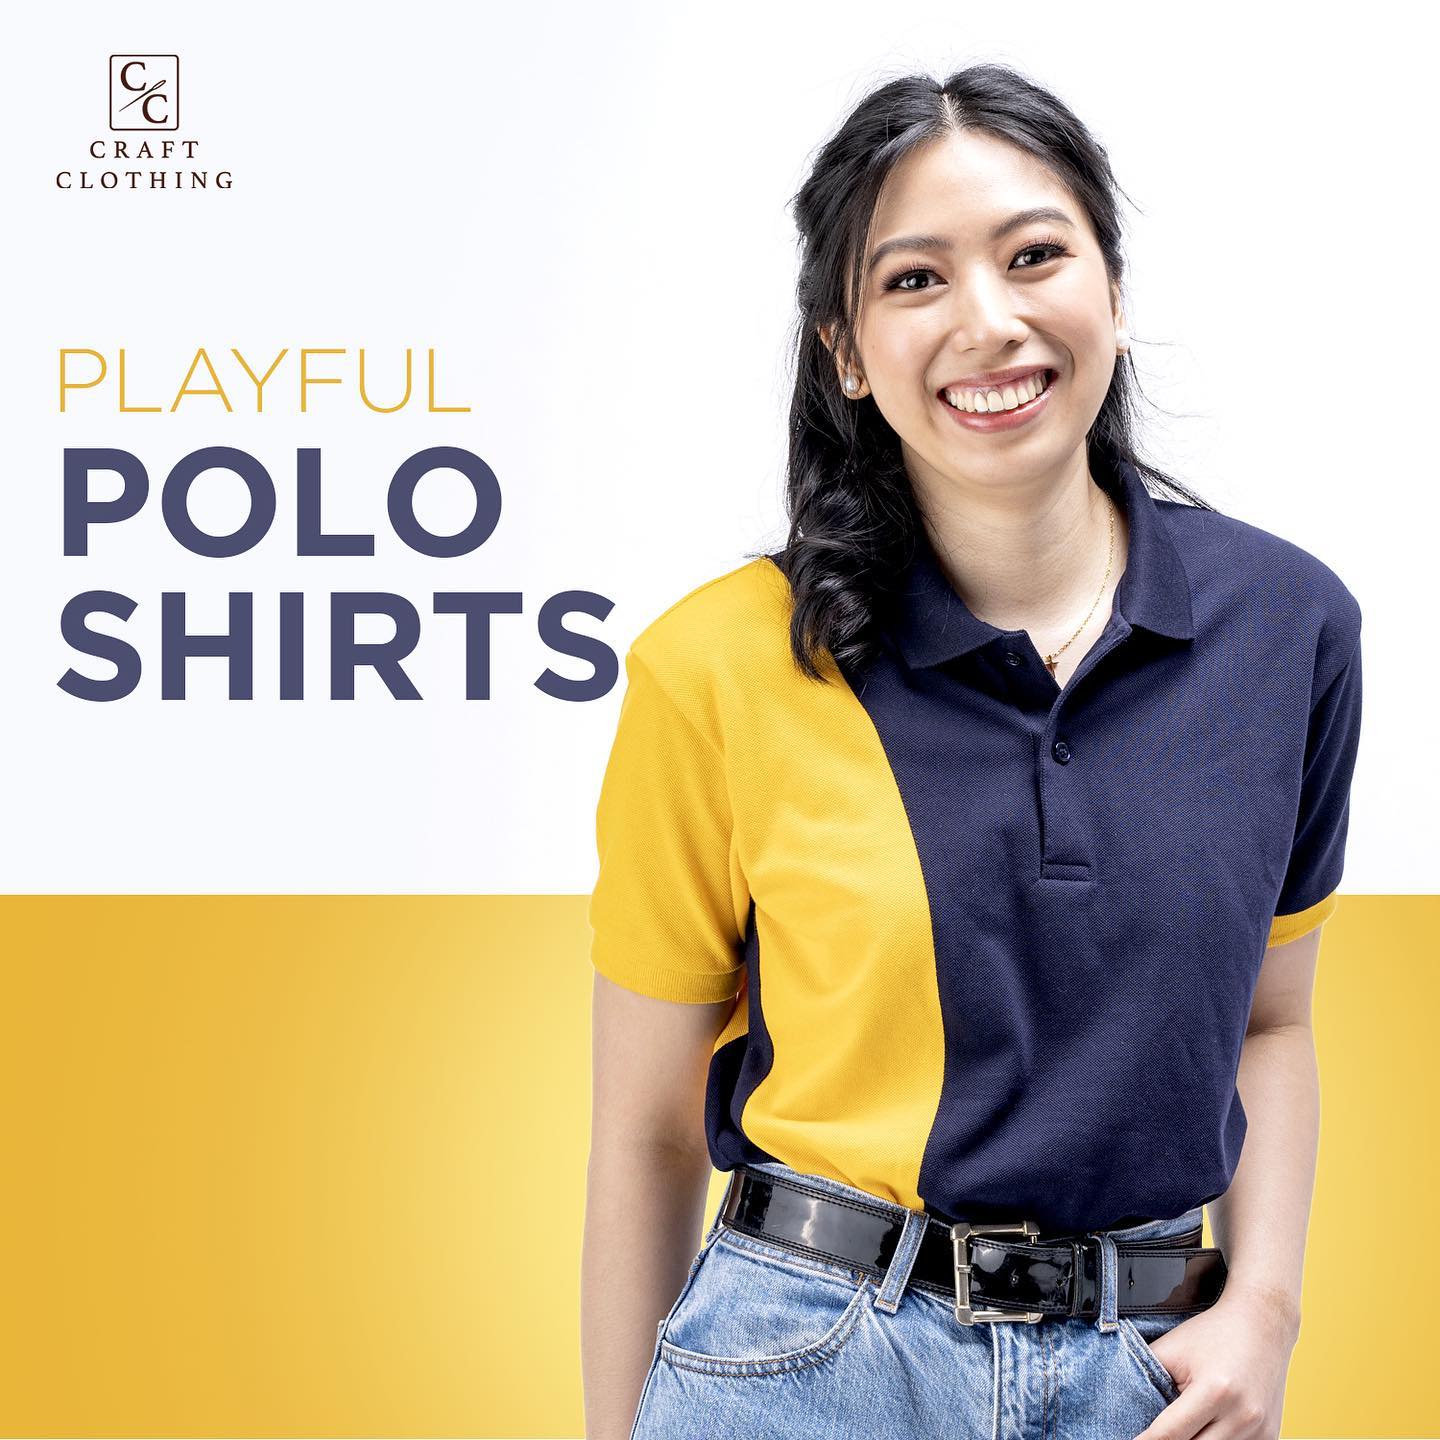 Playful Polo Shirts